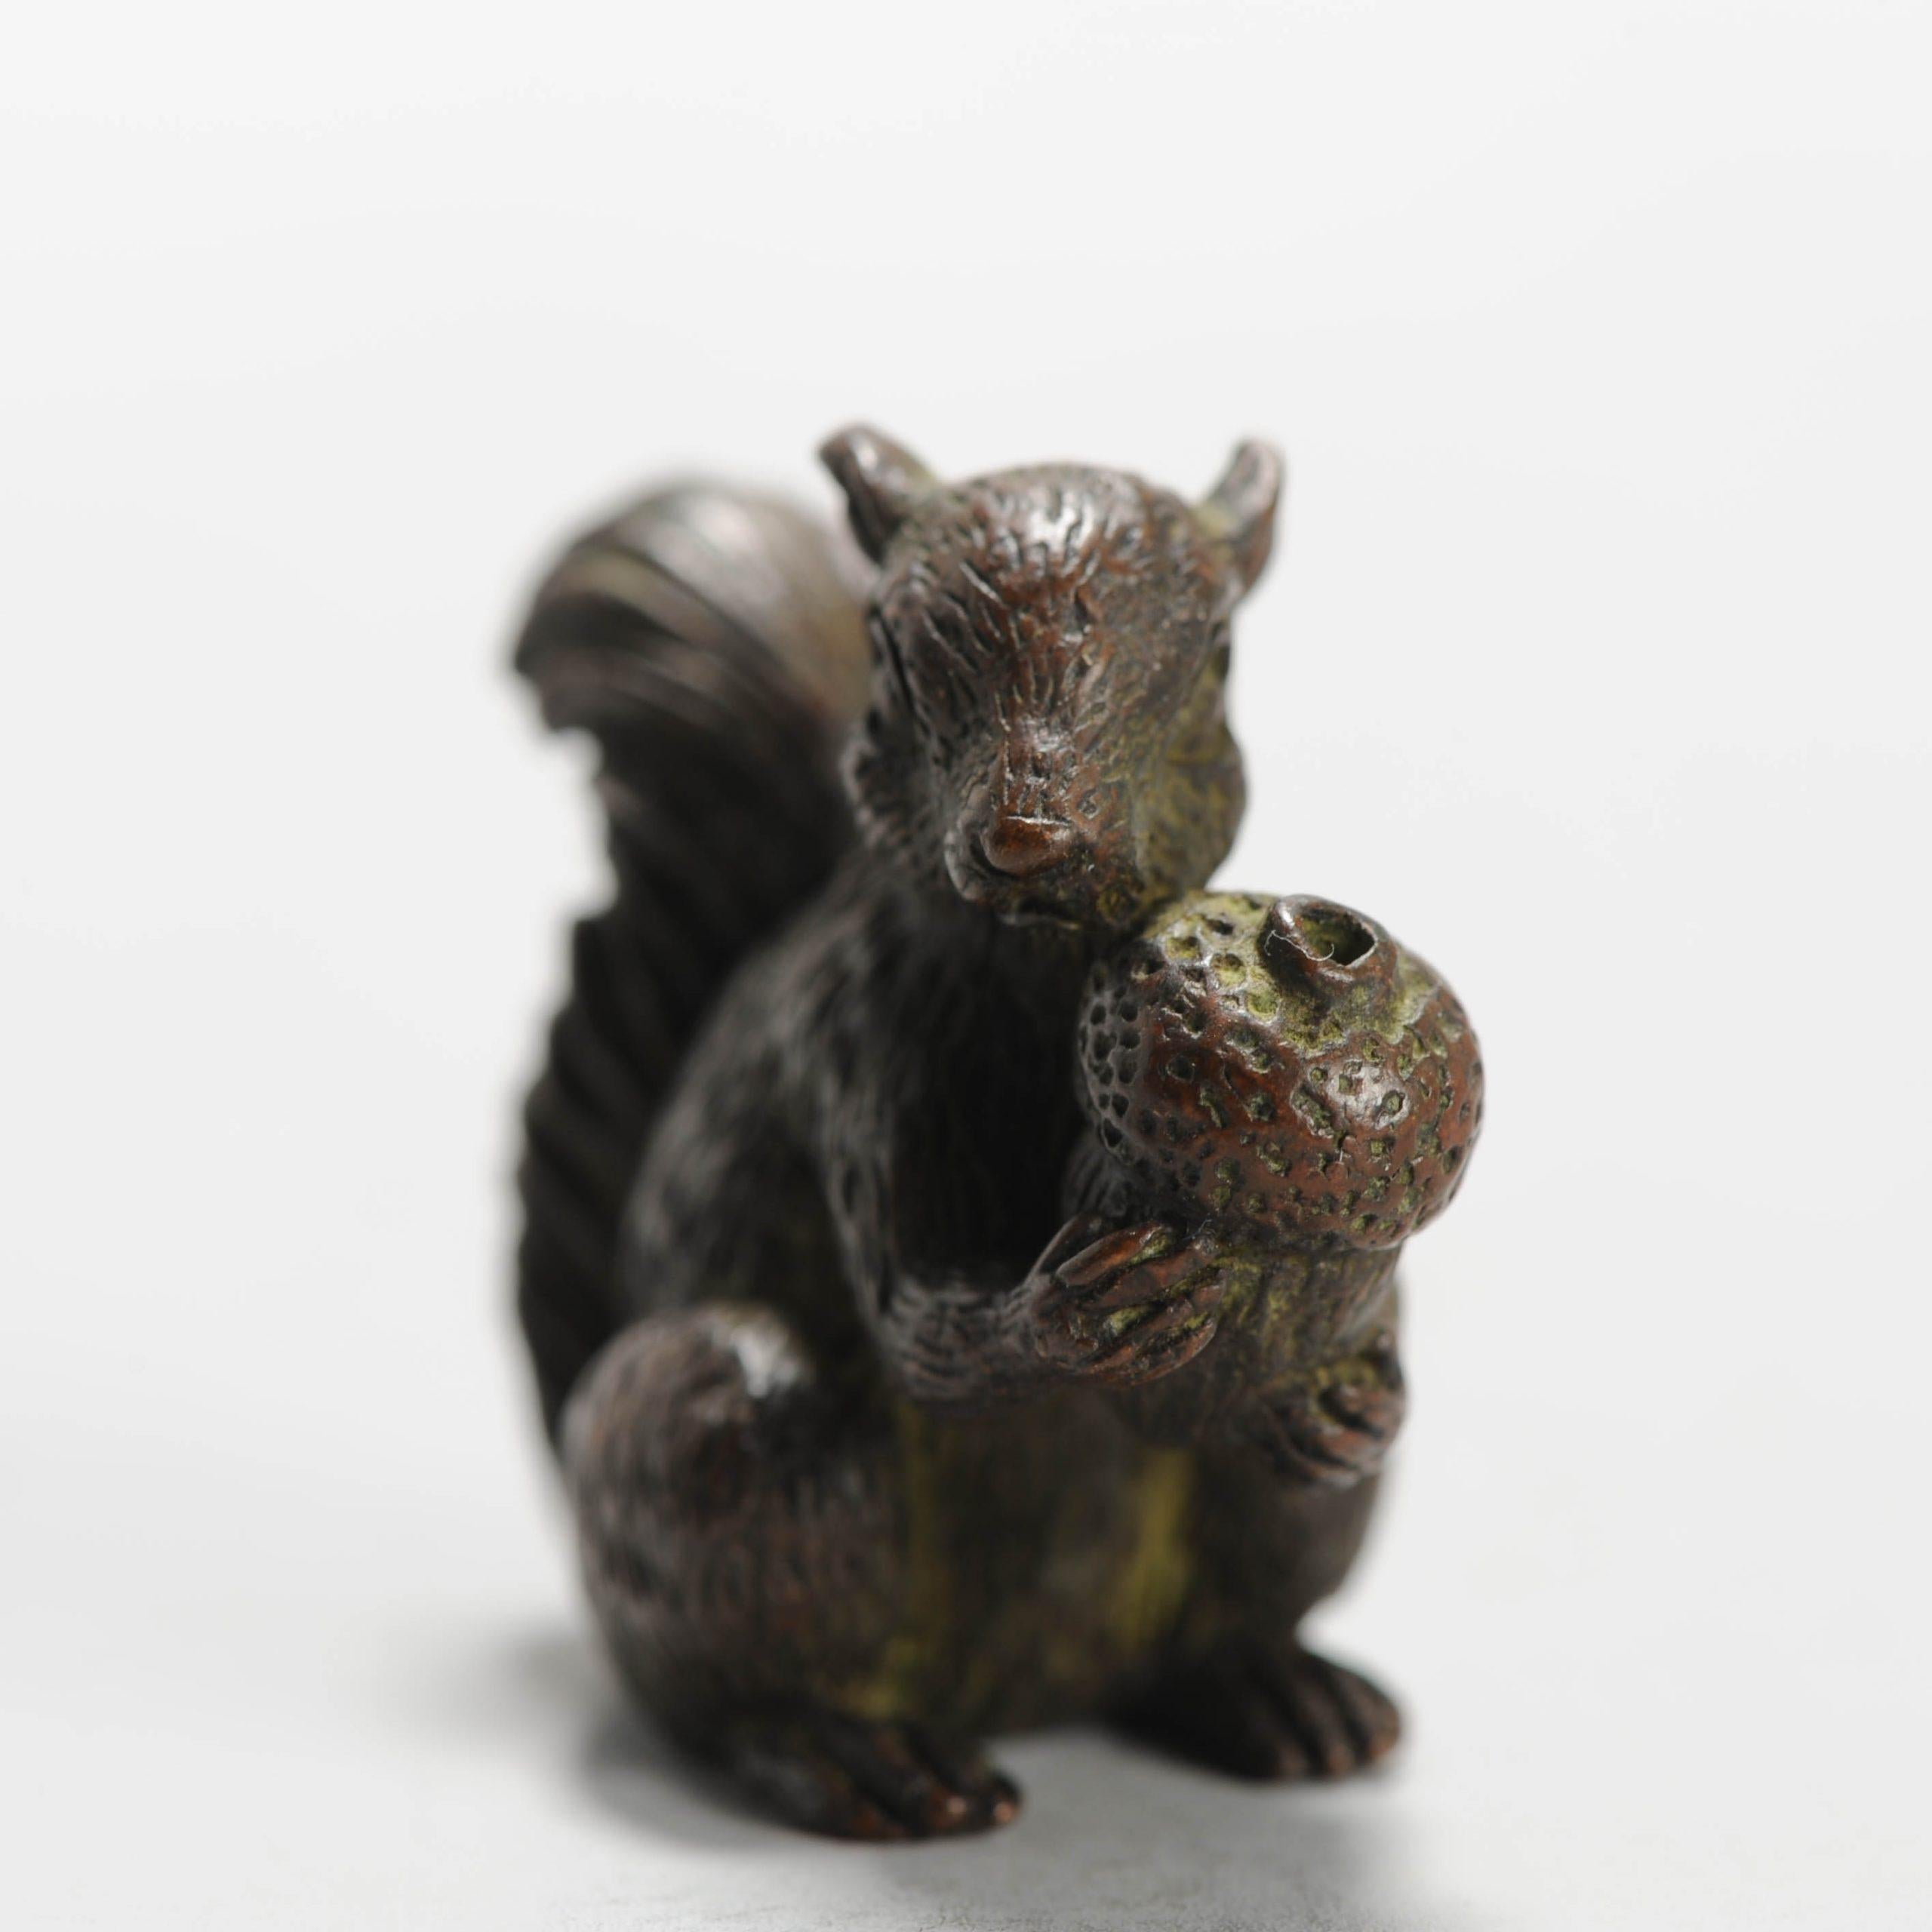 19./20. Jh. Bronze Netsuke Eichhörnchen mit Nuss Japan Japan Signiert
Bedingung
Zeitraum
20. Jahrhundert Meiji-Periode (1867-1912)